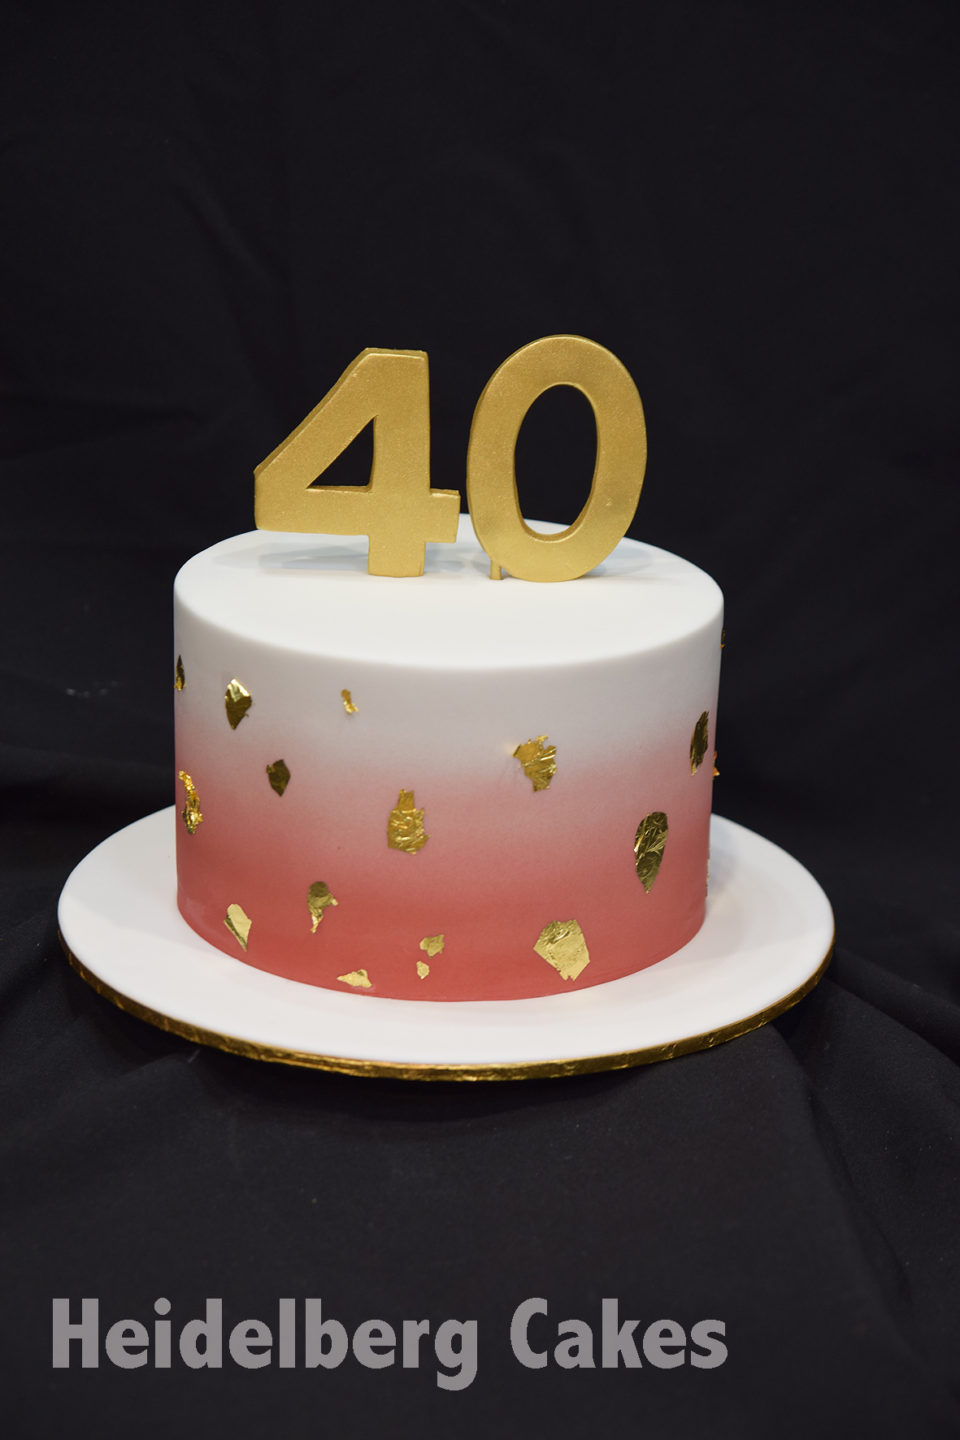 Sweet Bite - Happy 38th Birthday! Sugar free chocolate cake, sugar free  buttercream, and sugar free #hershey chocolate ganache drip.  #sweetbitekilleen #sugarfree #hershey #hersheys #splenda #killeencakes  #killeenbakery #killeenbaker #killeentexas ...